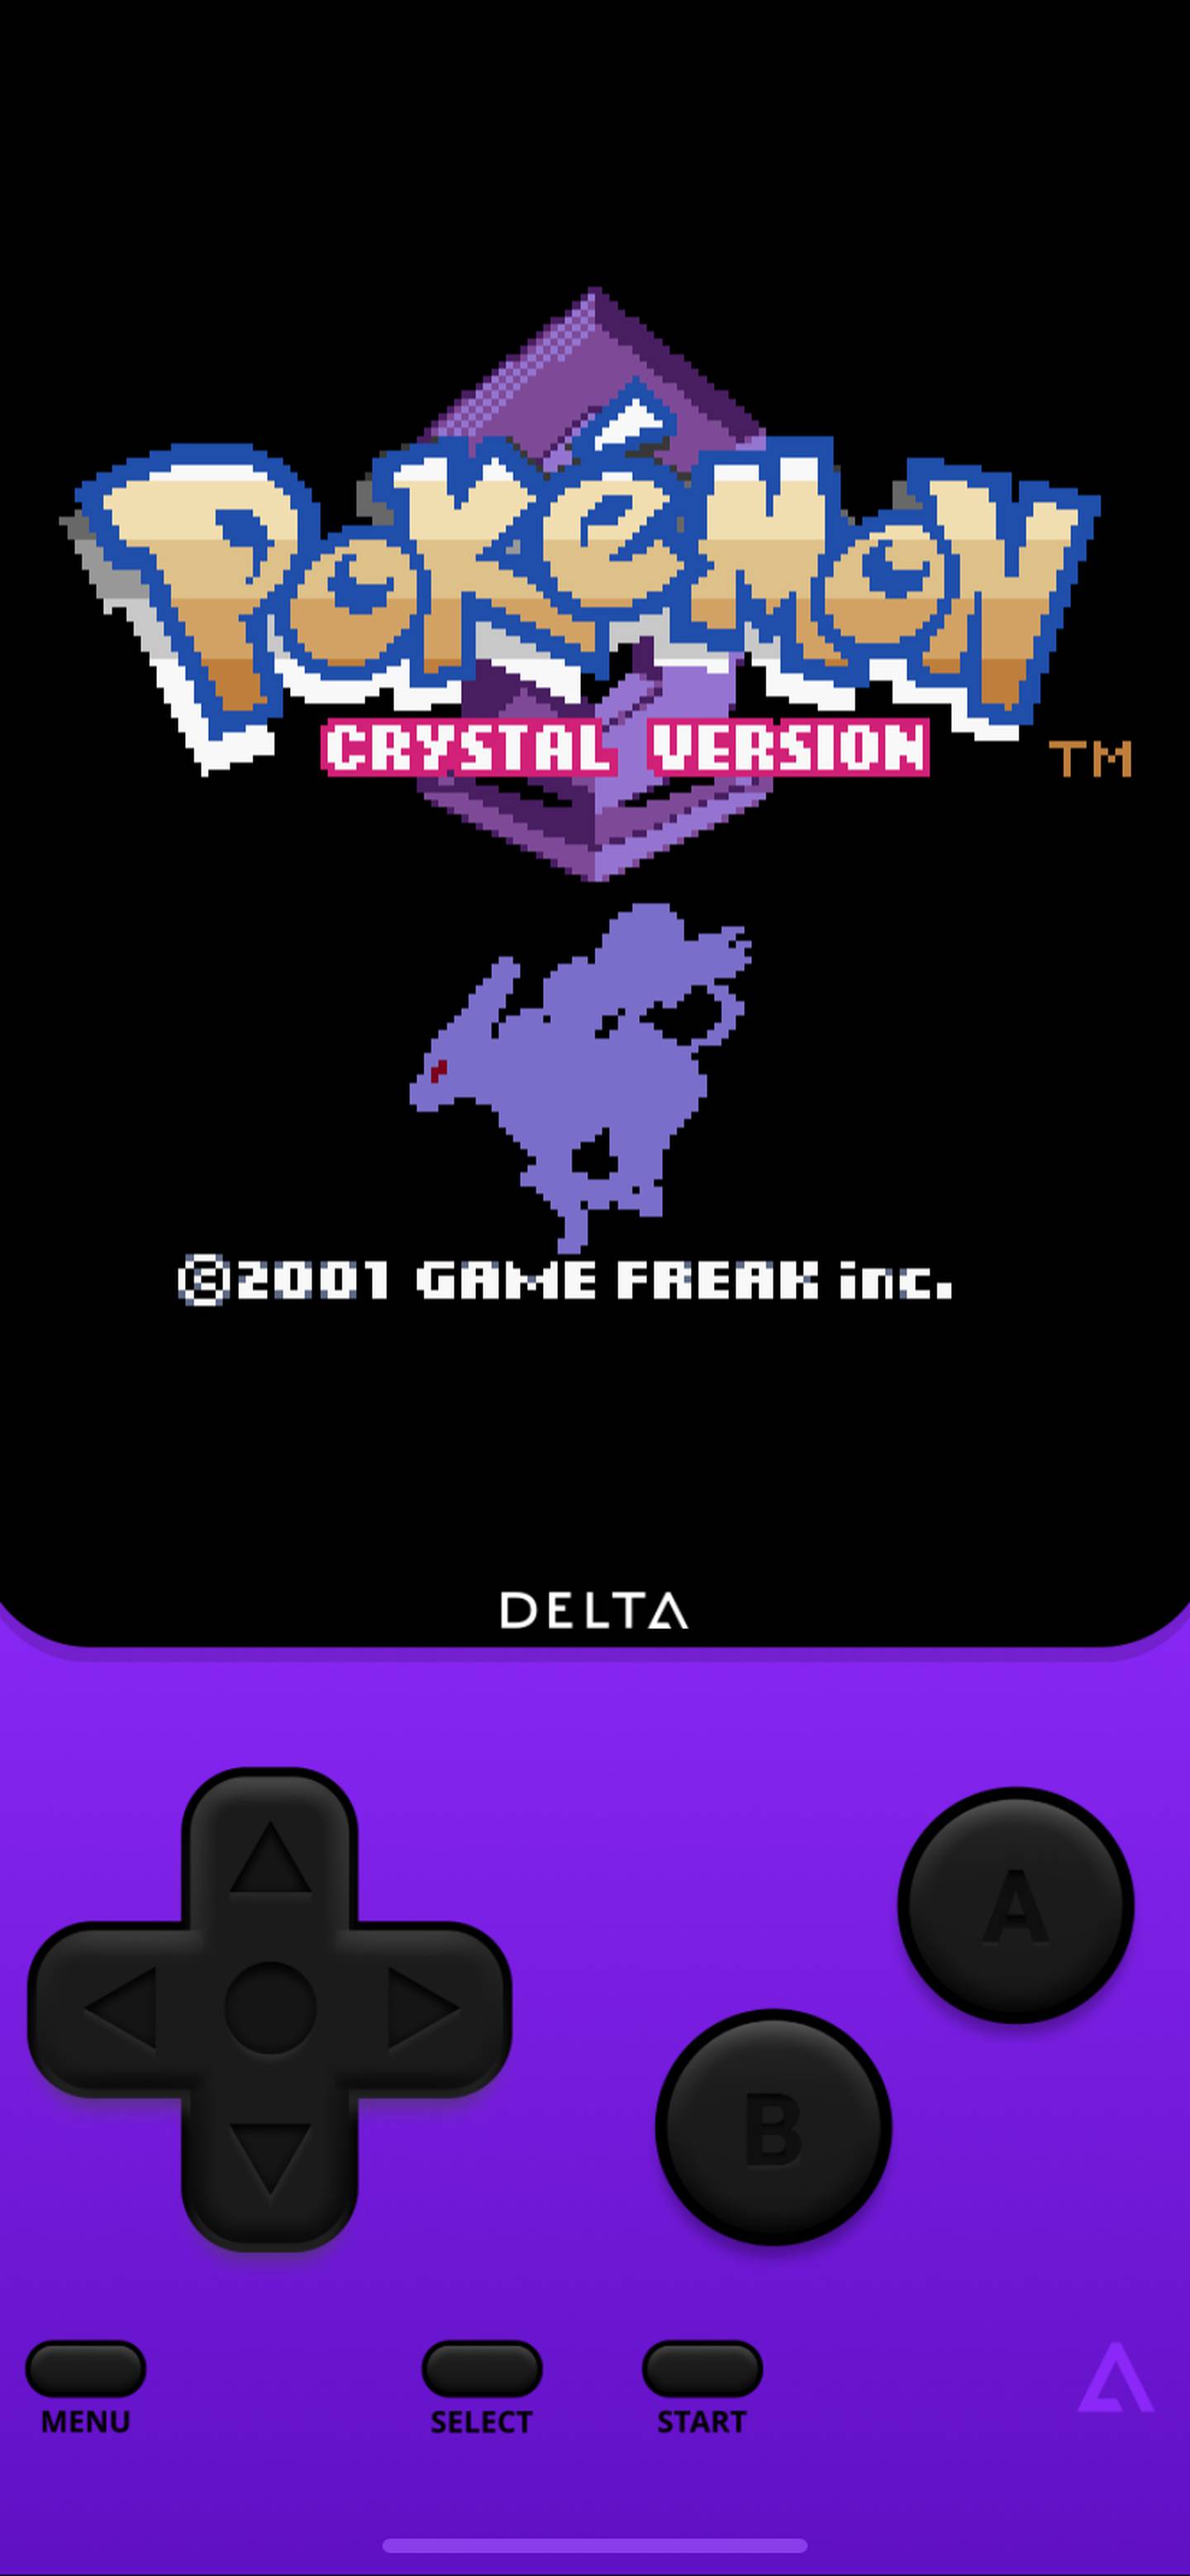 Pokémon Crystal corre de maravilla en el emulador Delta.